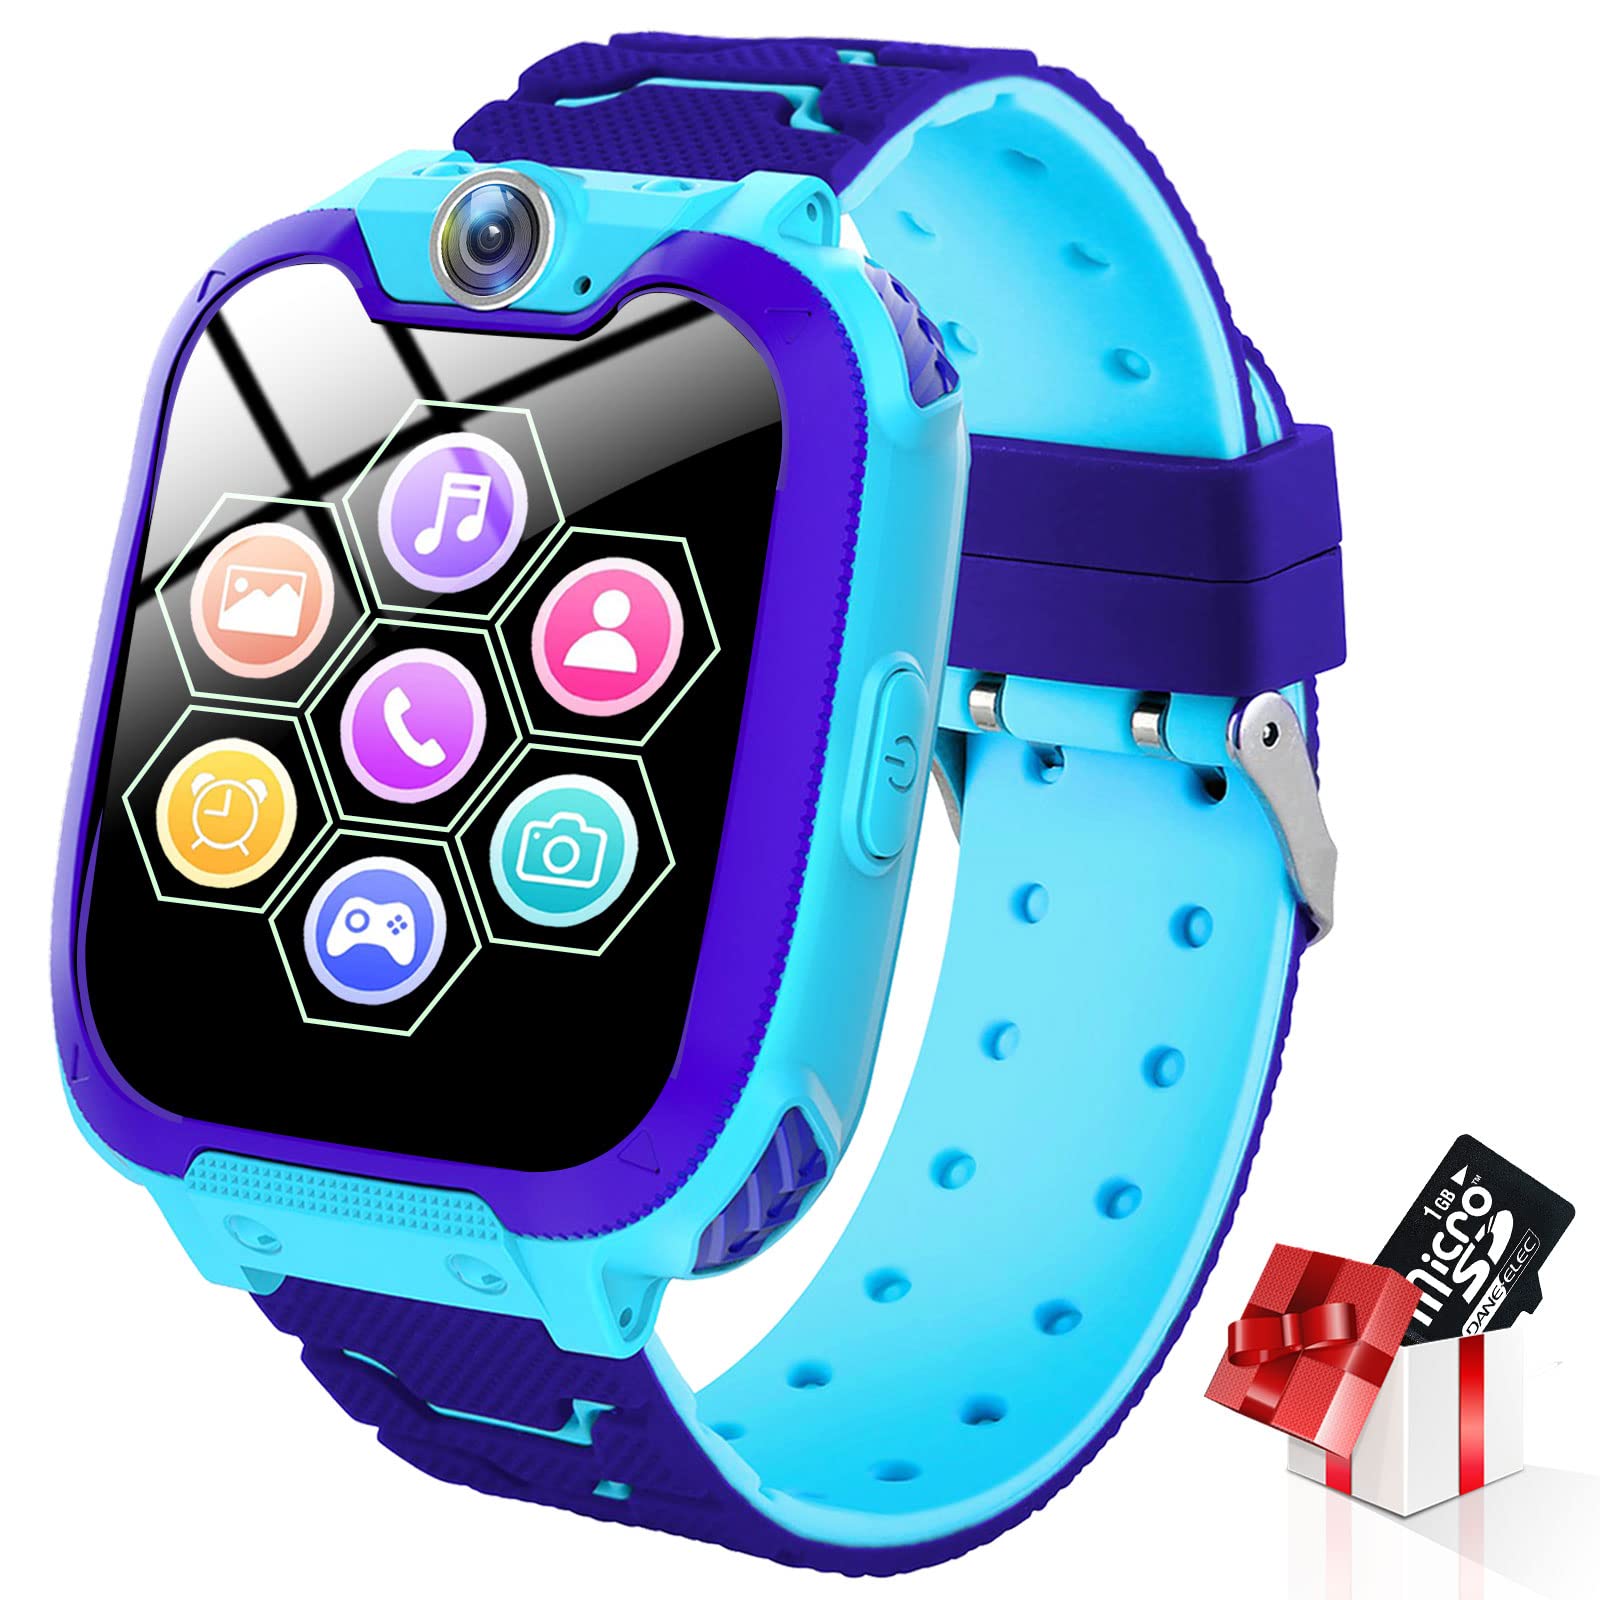 Kinder Smartwatch 7 Spiele - Kids Smartwatch MP3 Musik - Touch Screen Smart Phone Watch mit Kamera Wecker Recorder Rechner, Scherzt Intelligente Uhr für Jungen Mädchen Geschenk 3-12 Ys(W/ 1G SD Card)